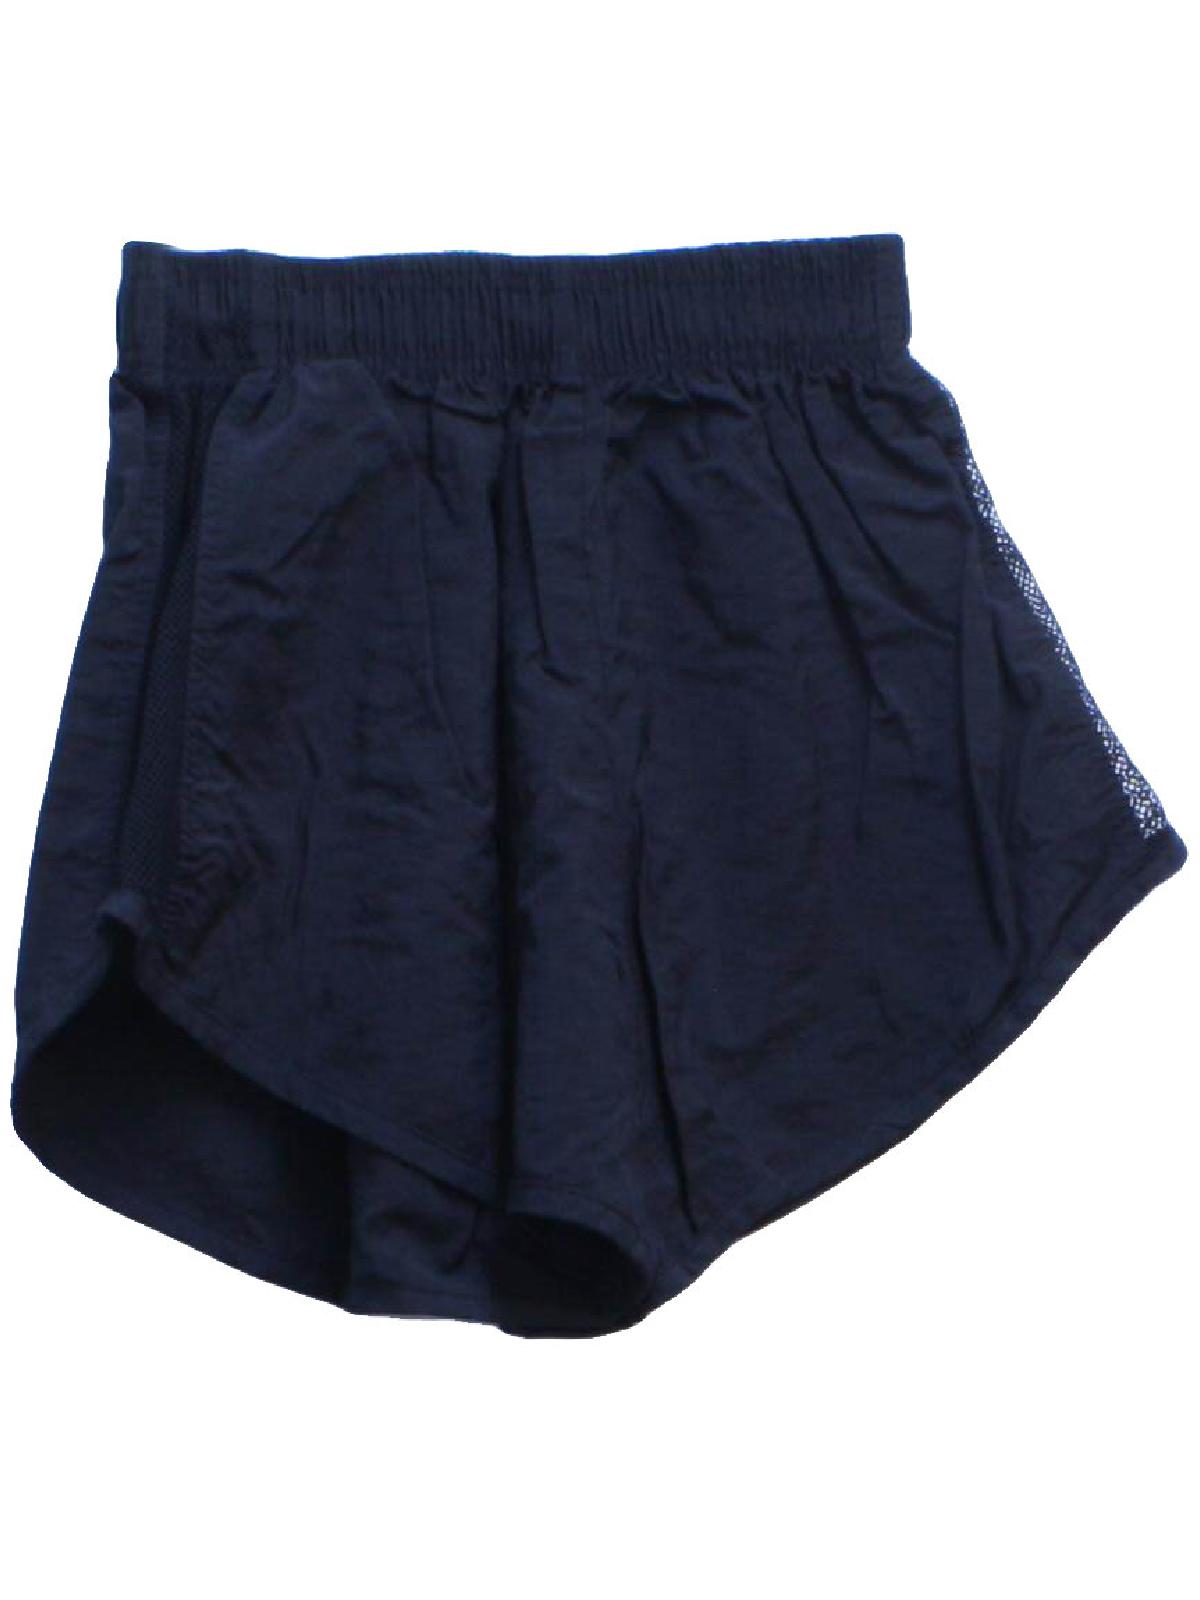 Retro Nineties Shorts: 90s -Pro Spirit- Mens black background nylon ...